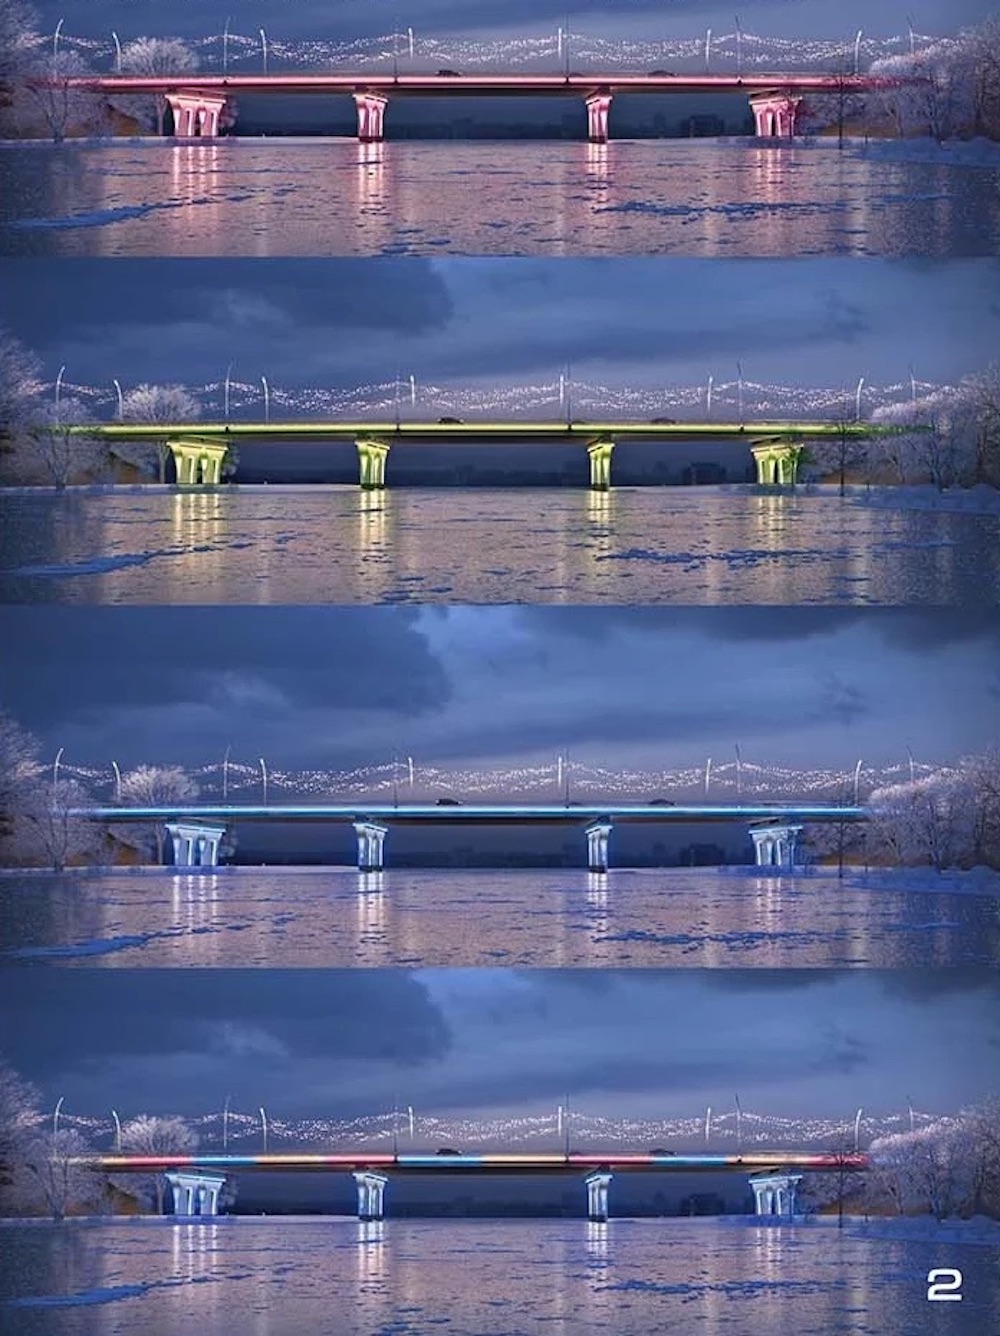 Разноцветная подсветка на реконструированном мосту через реку Мухавец по бульвару Шевченко в Бресте. Фото: nashaniva.com.